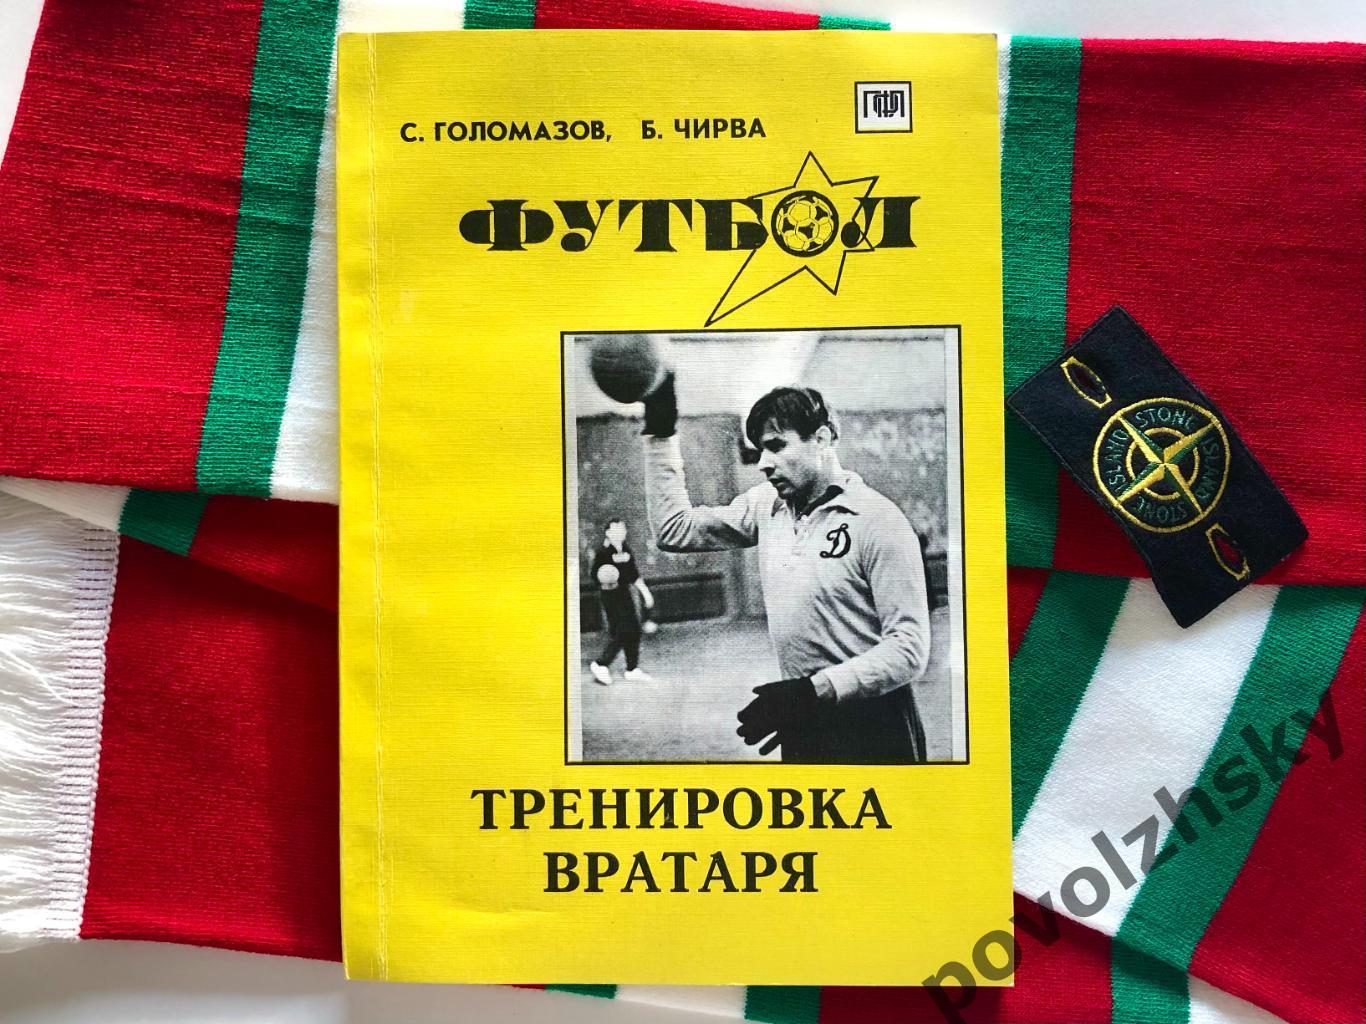 Голомазов, Чирва — Футбол: тренировка вратаря